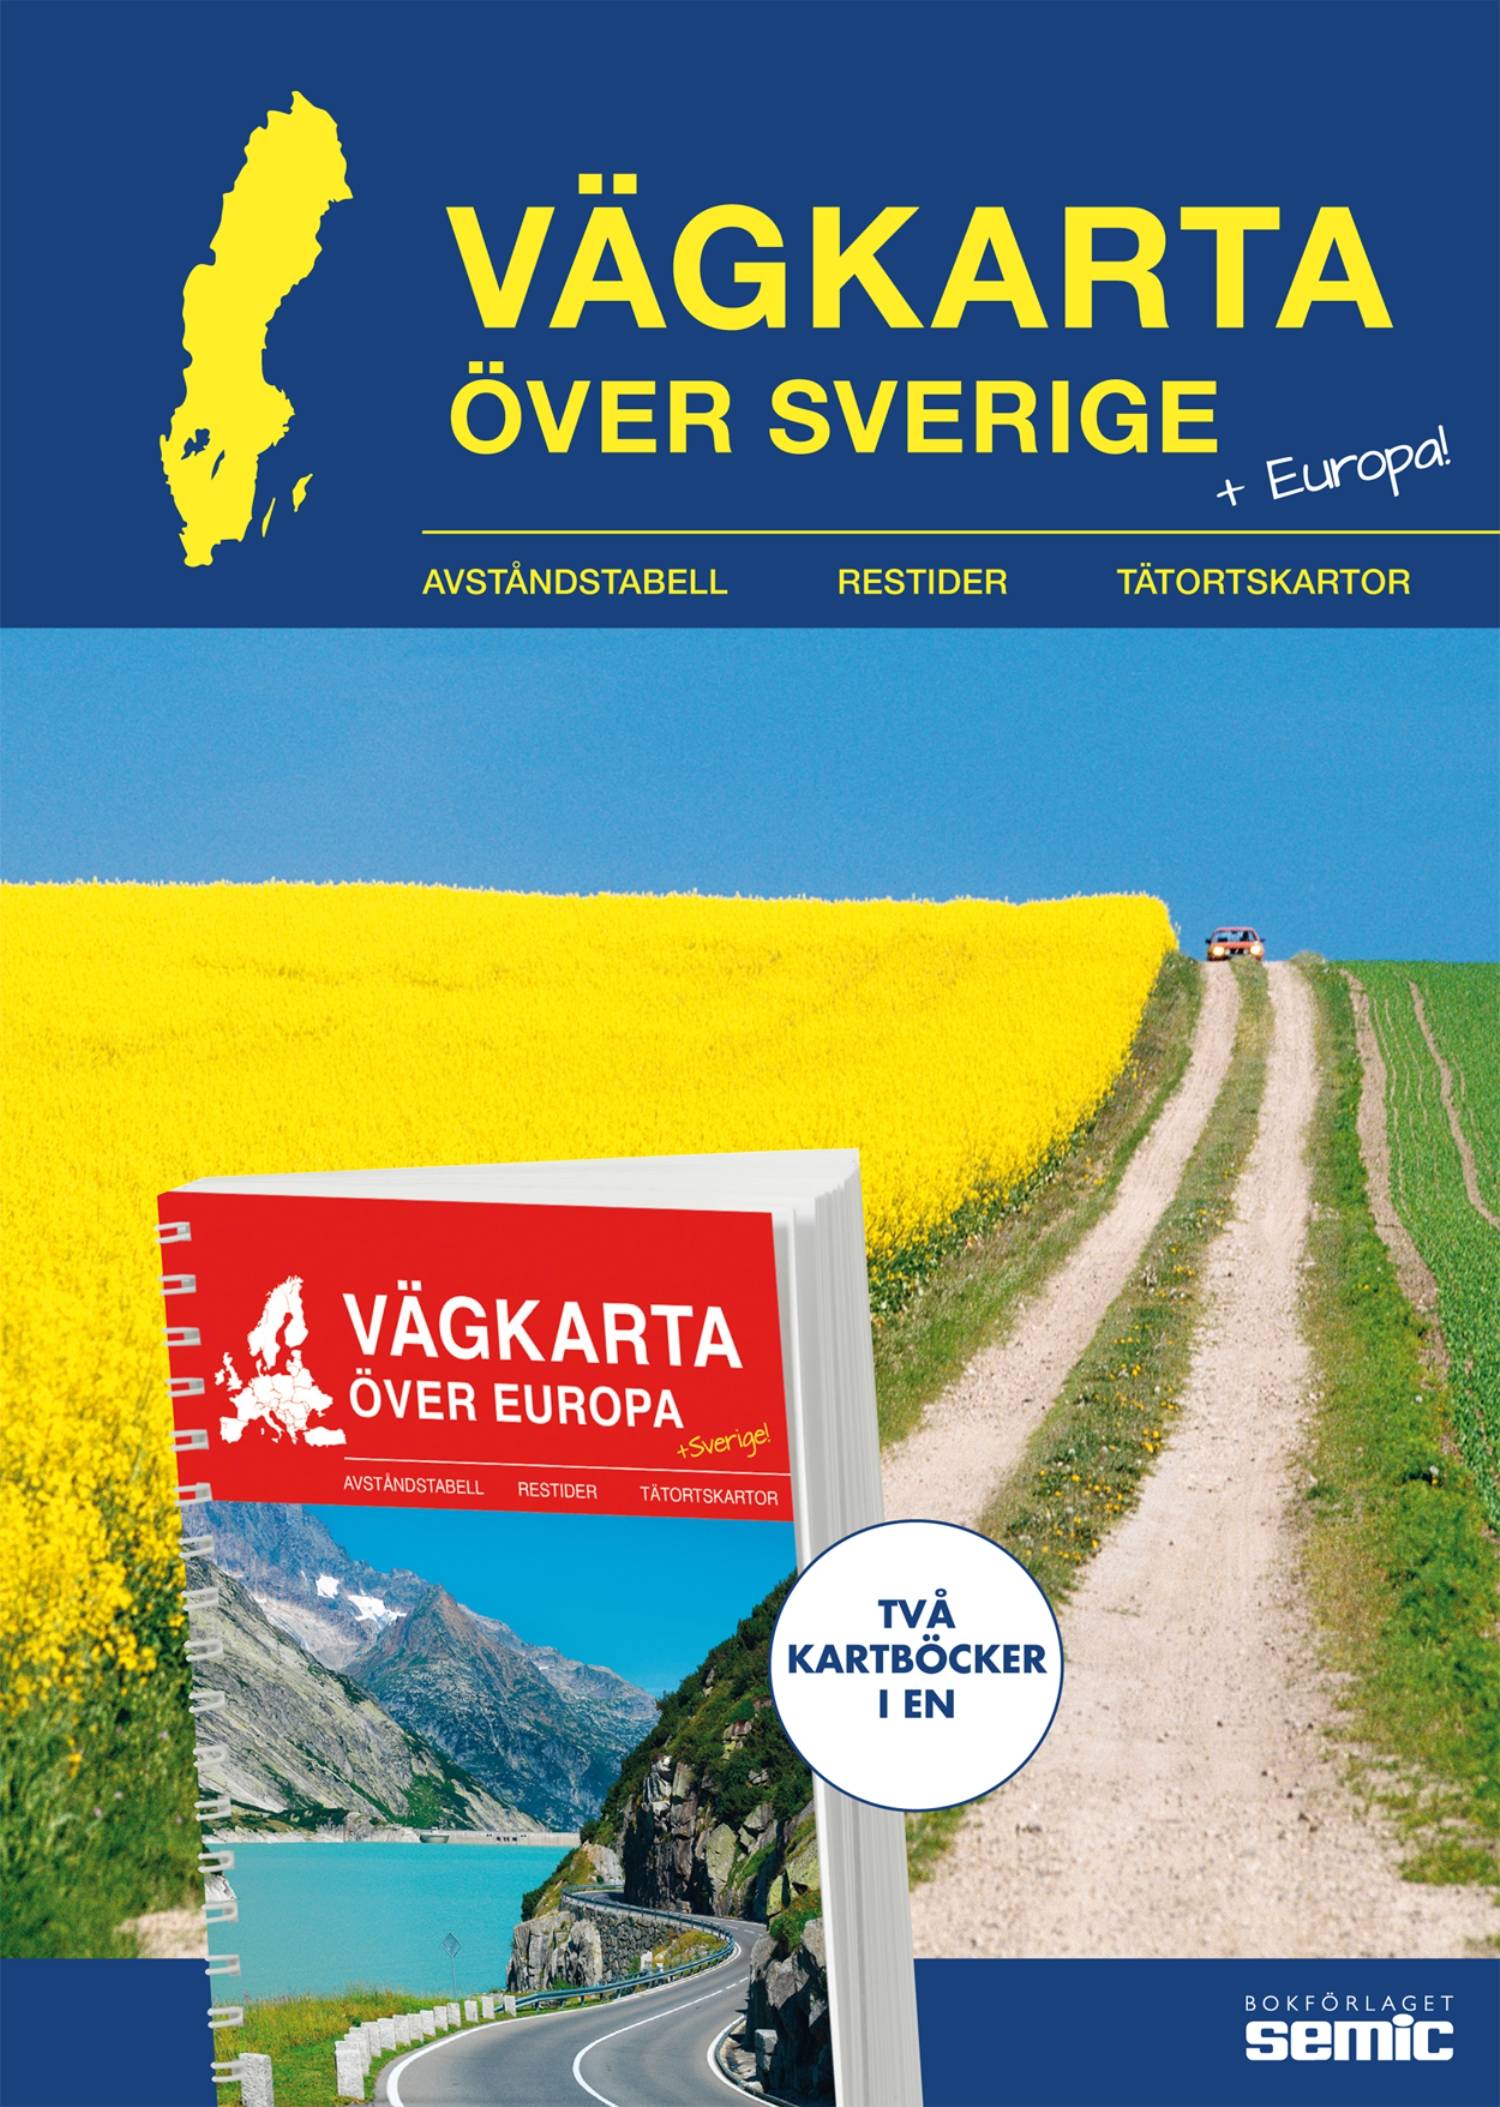 Vägkarta över Sverige / Europa